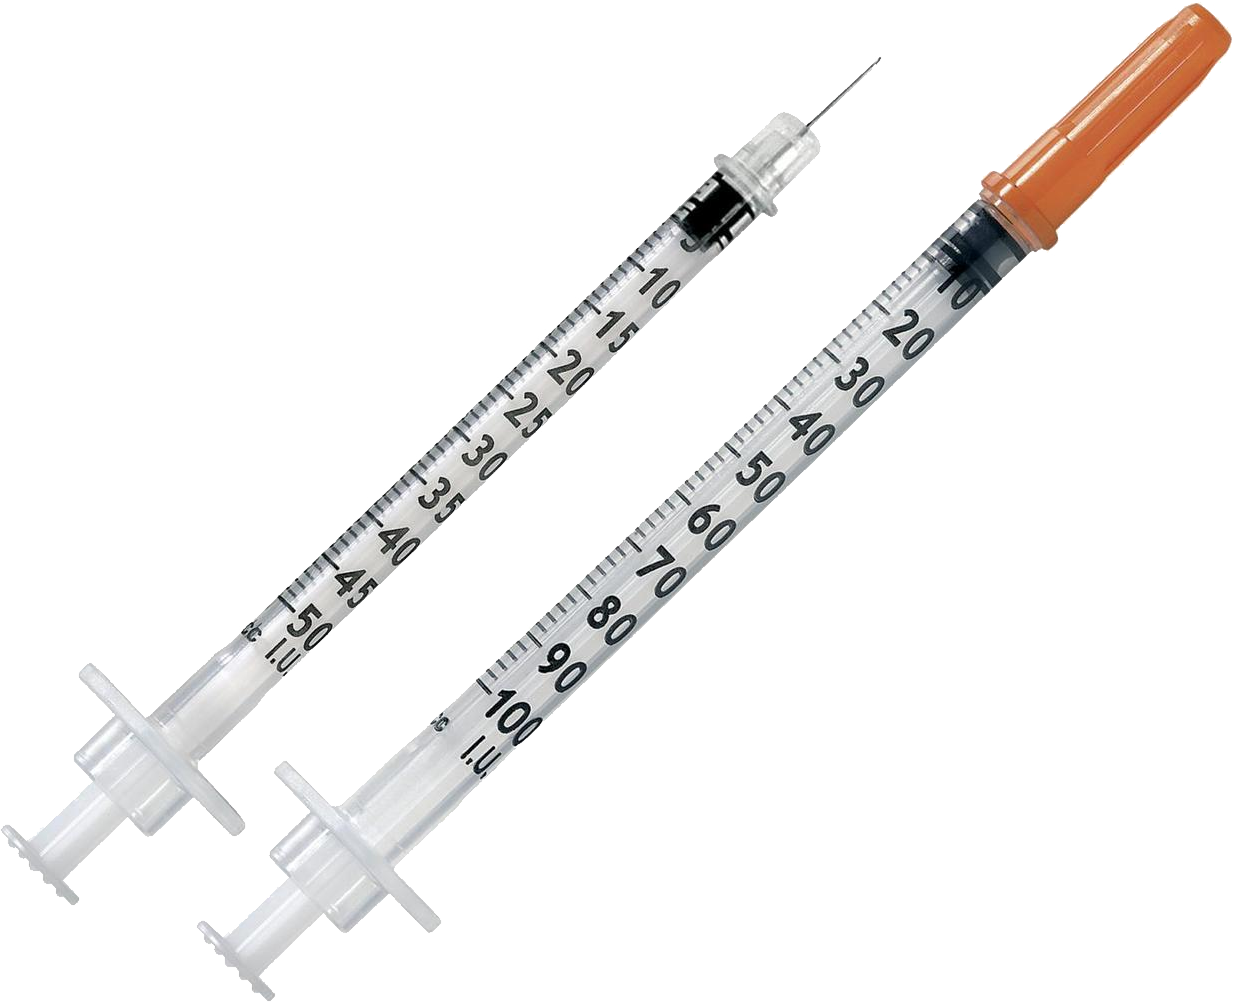 Syringe Needle Download Image Download HQ PNG PNG Image